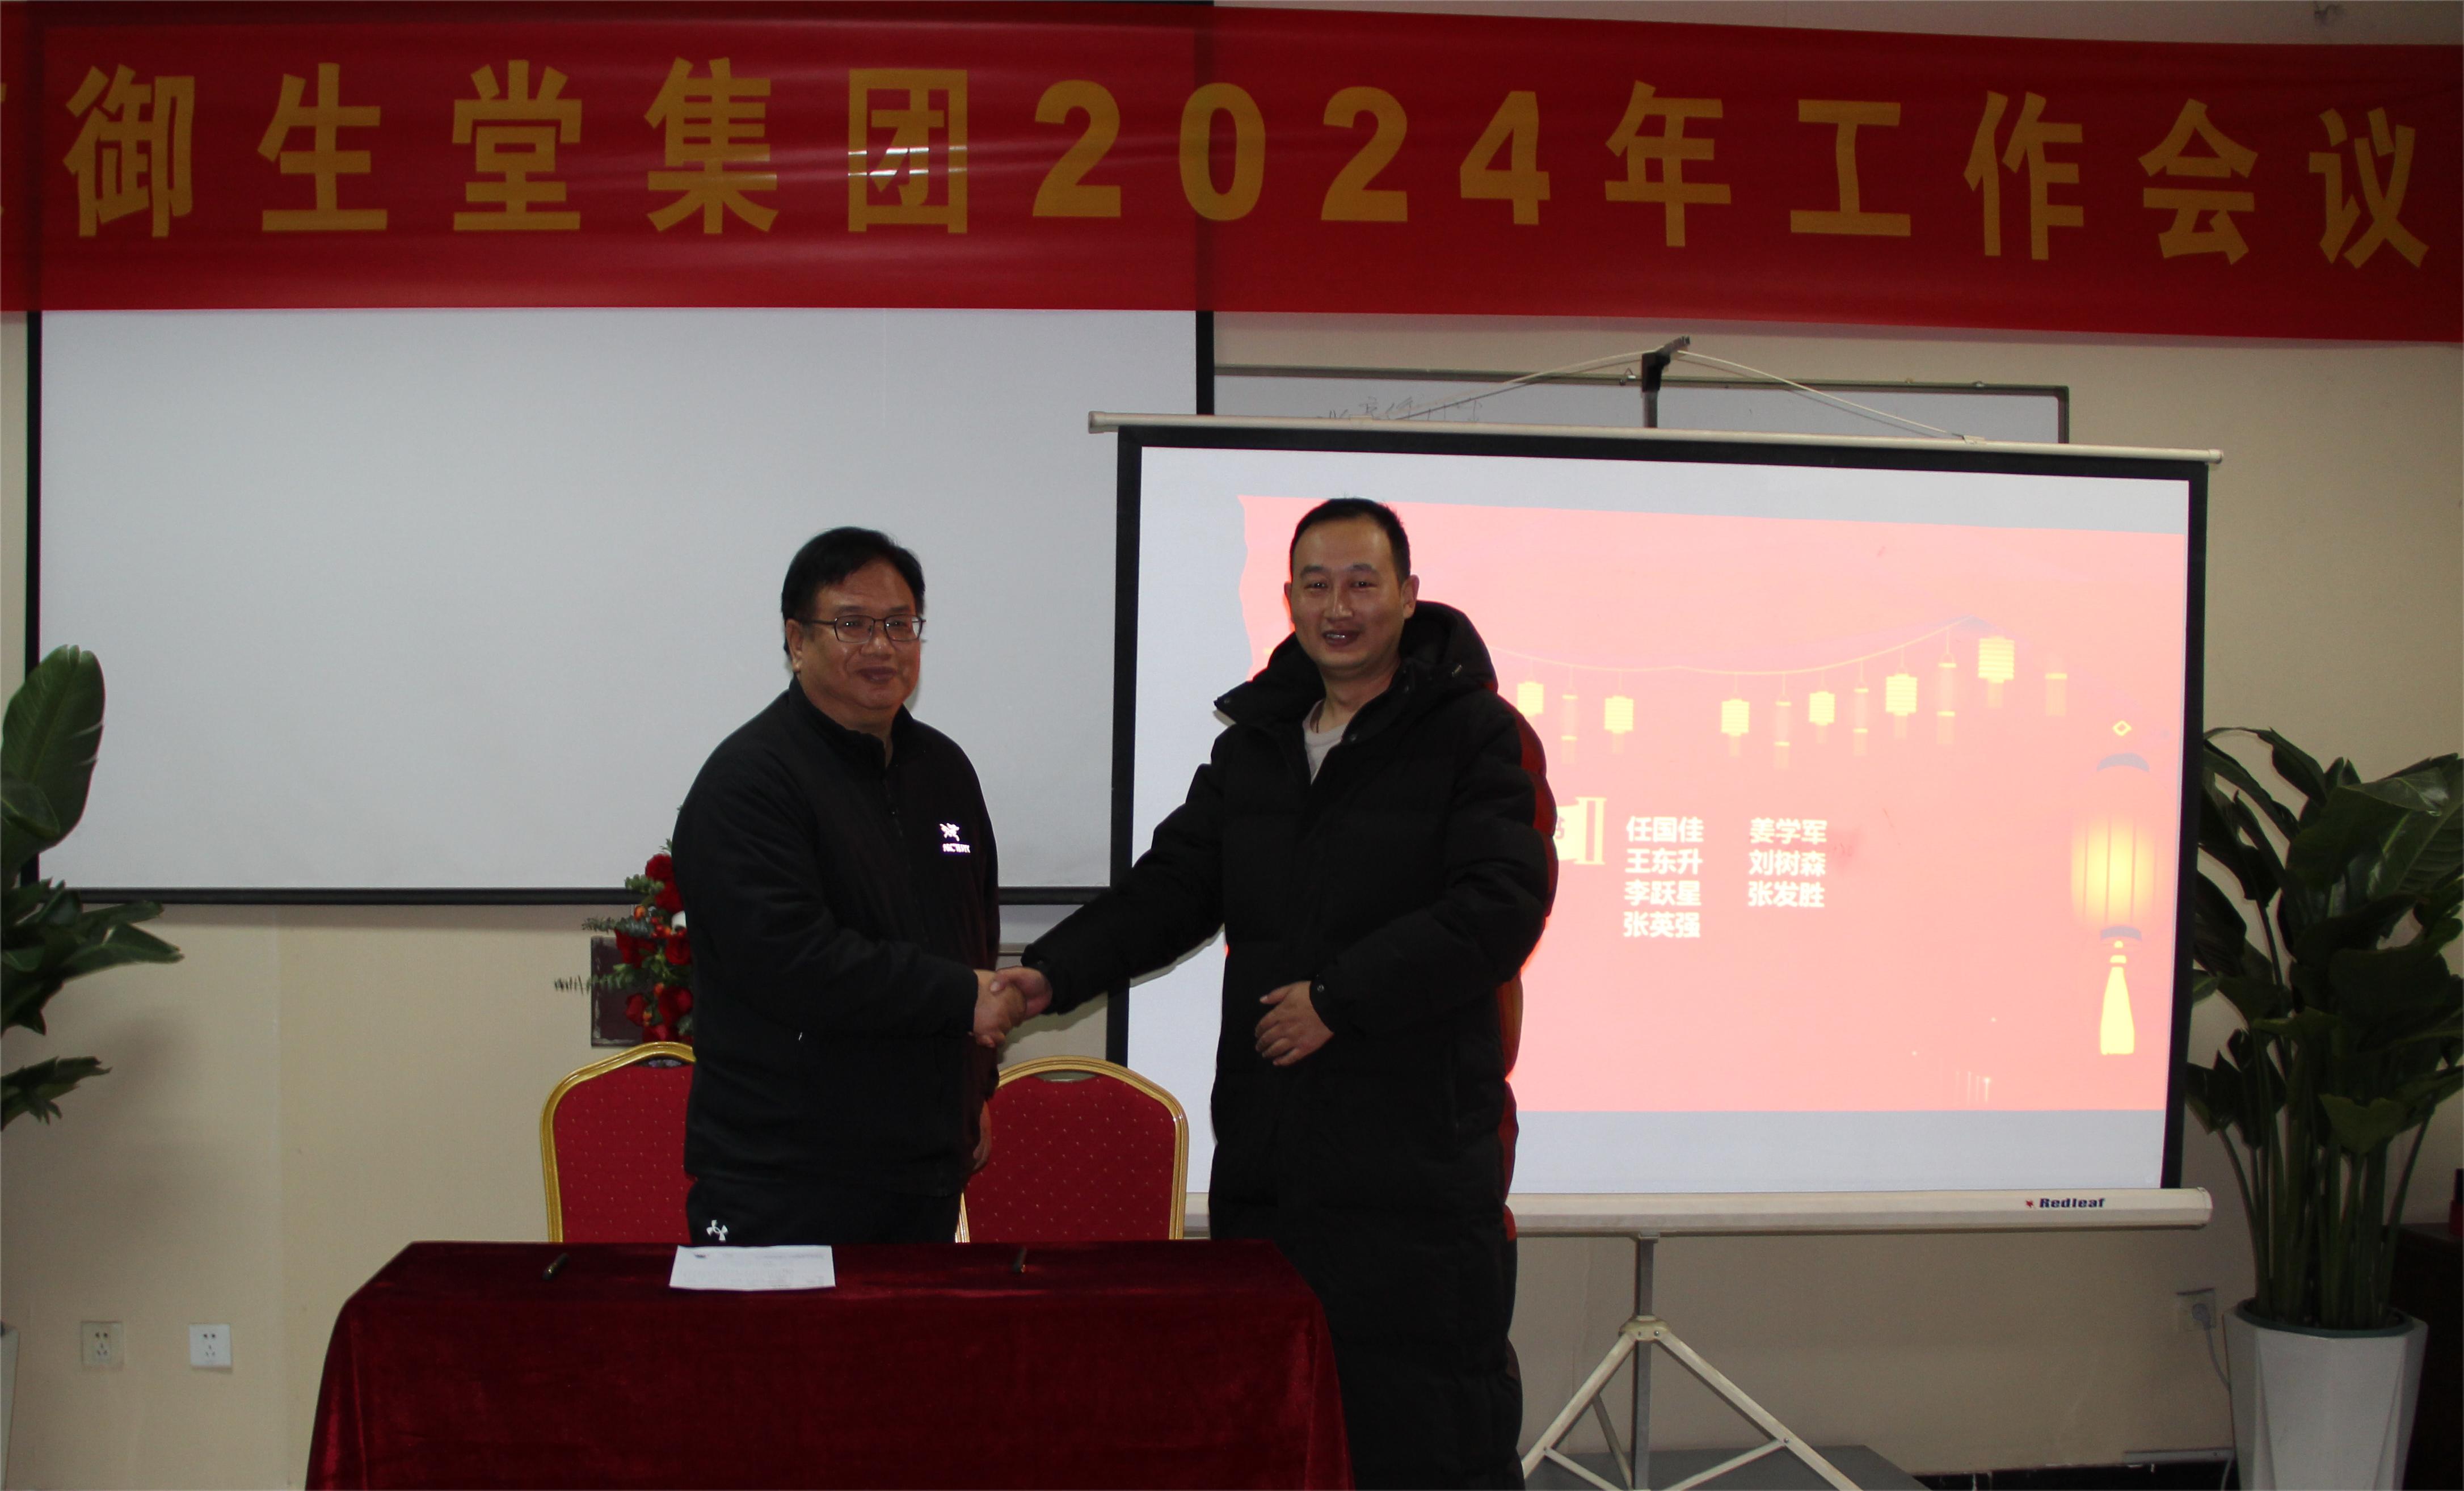 乘风破浪，梦想将再次起航——北京御生堂集团2024年工作会议圆满完成